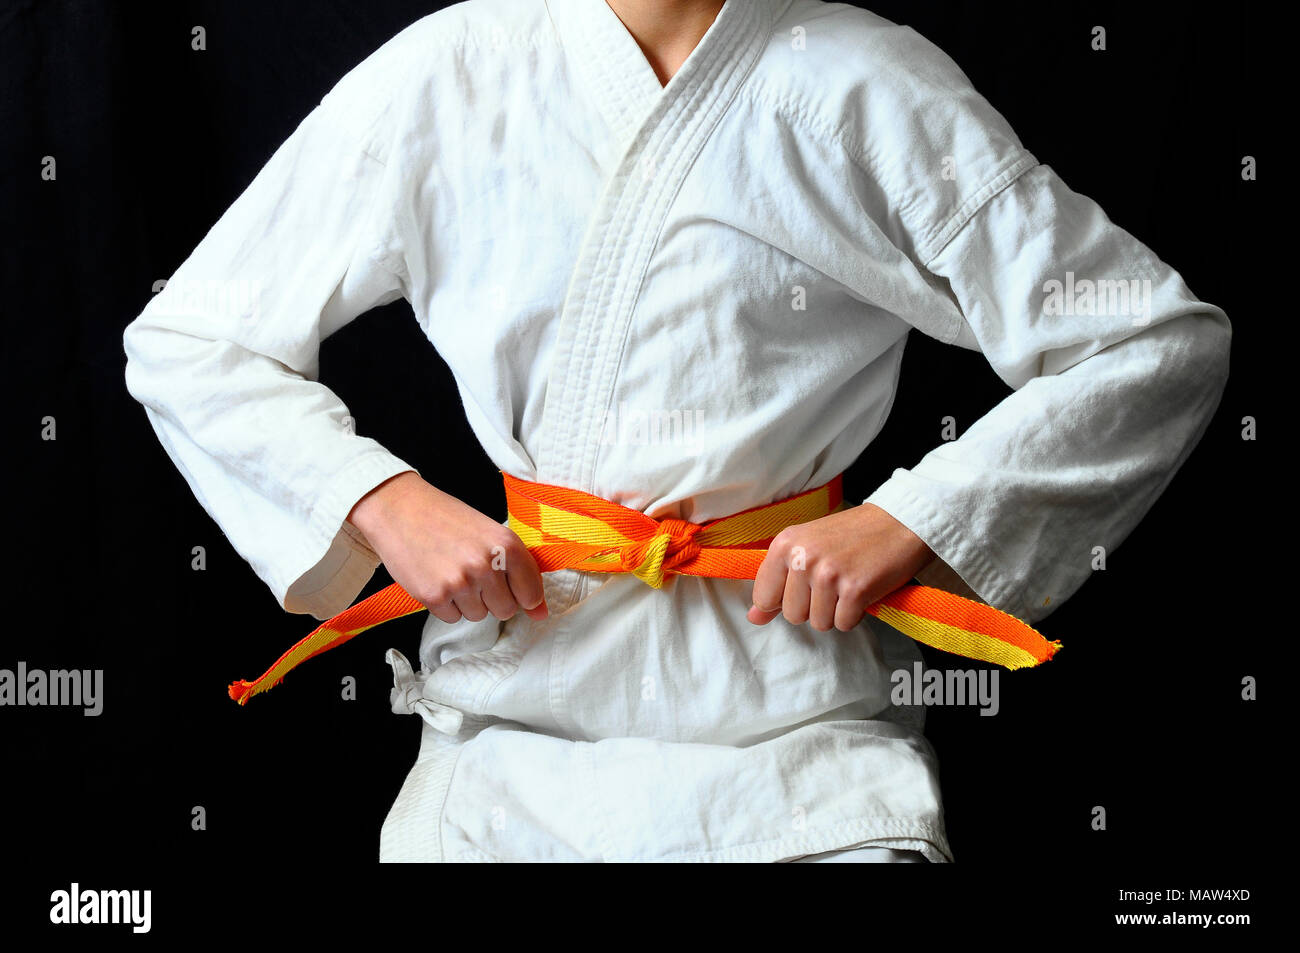 Die Hände des Kindes einen Bogen auf orange gelb Shotokai Karate Gürtel  Stockfotografie - Alamy